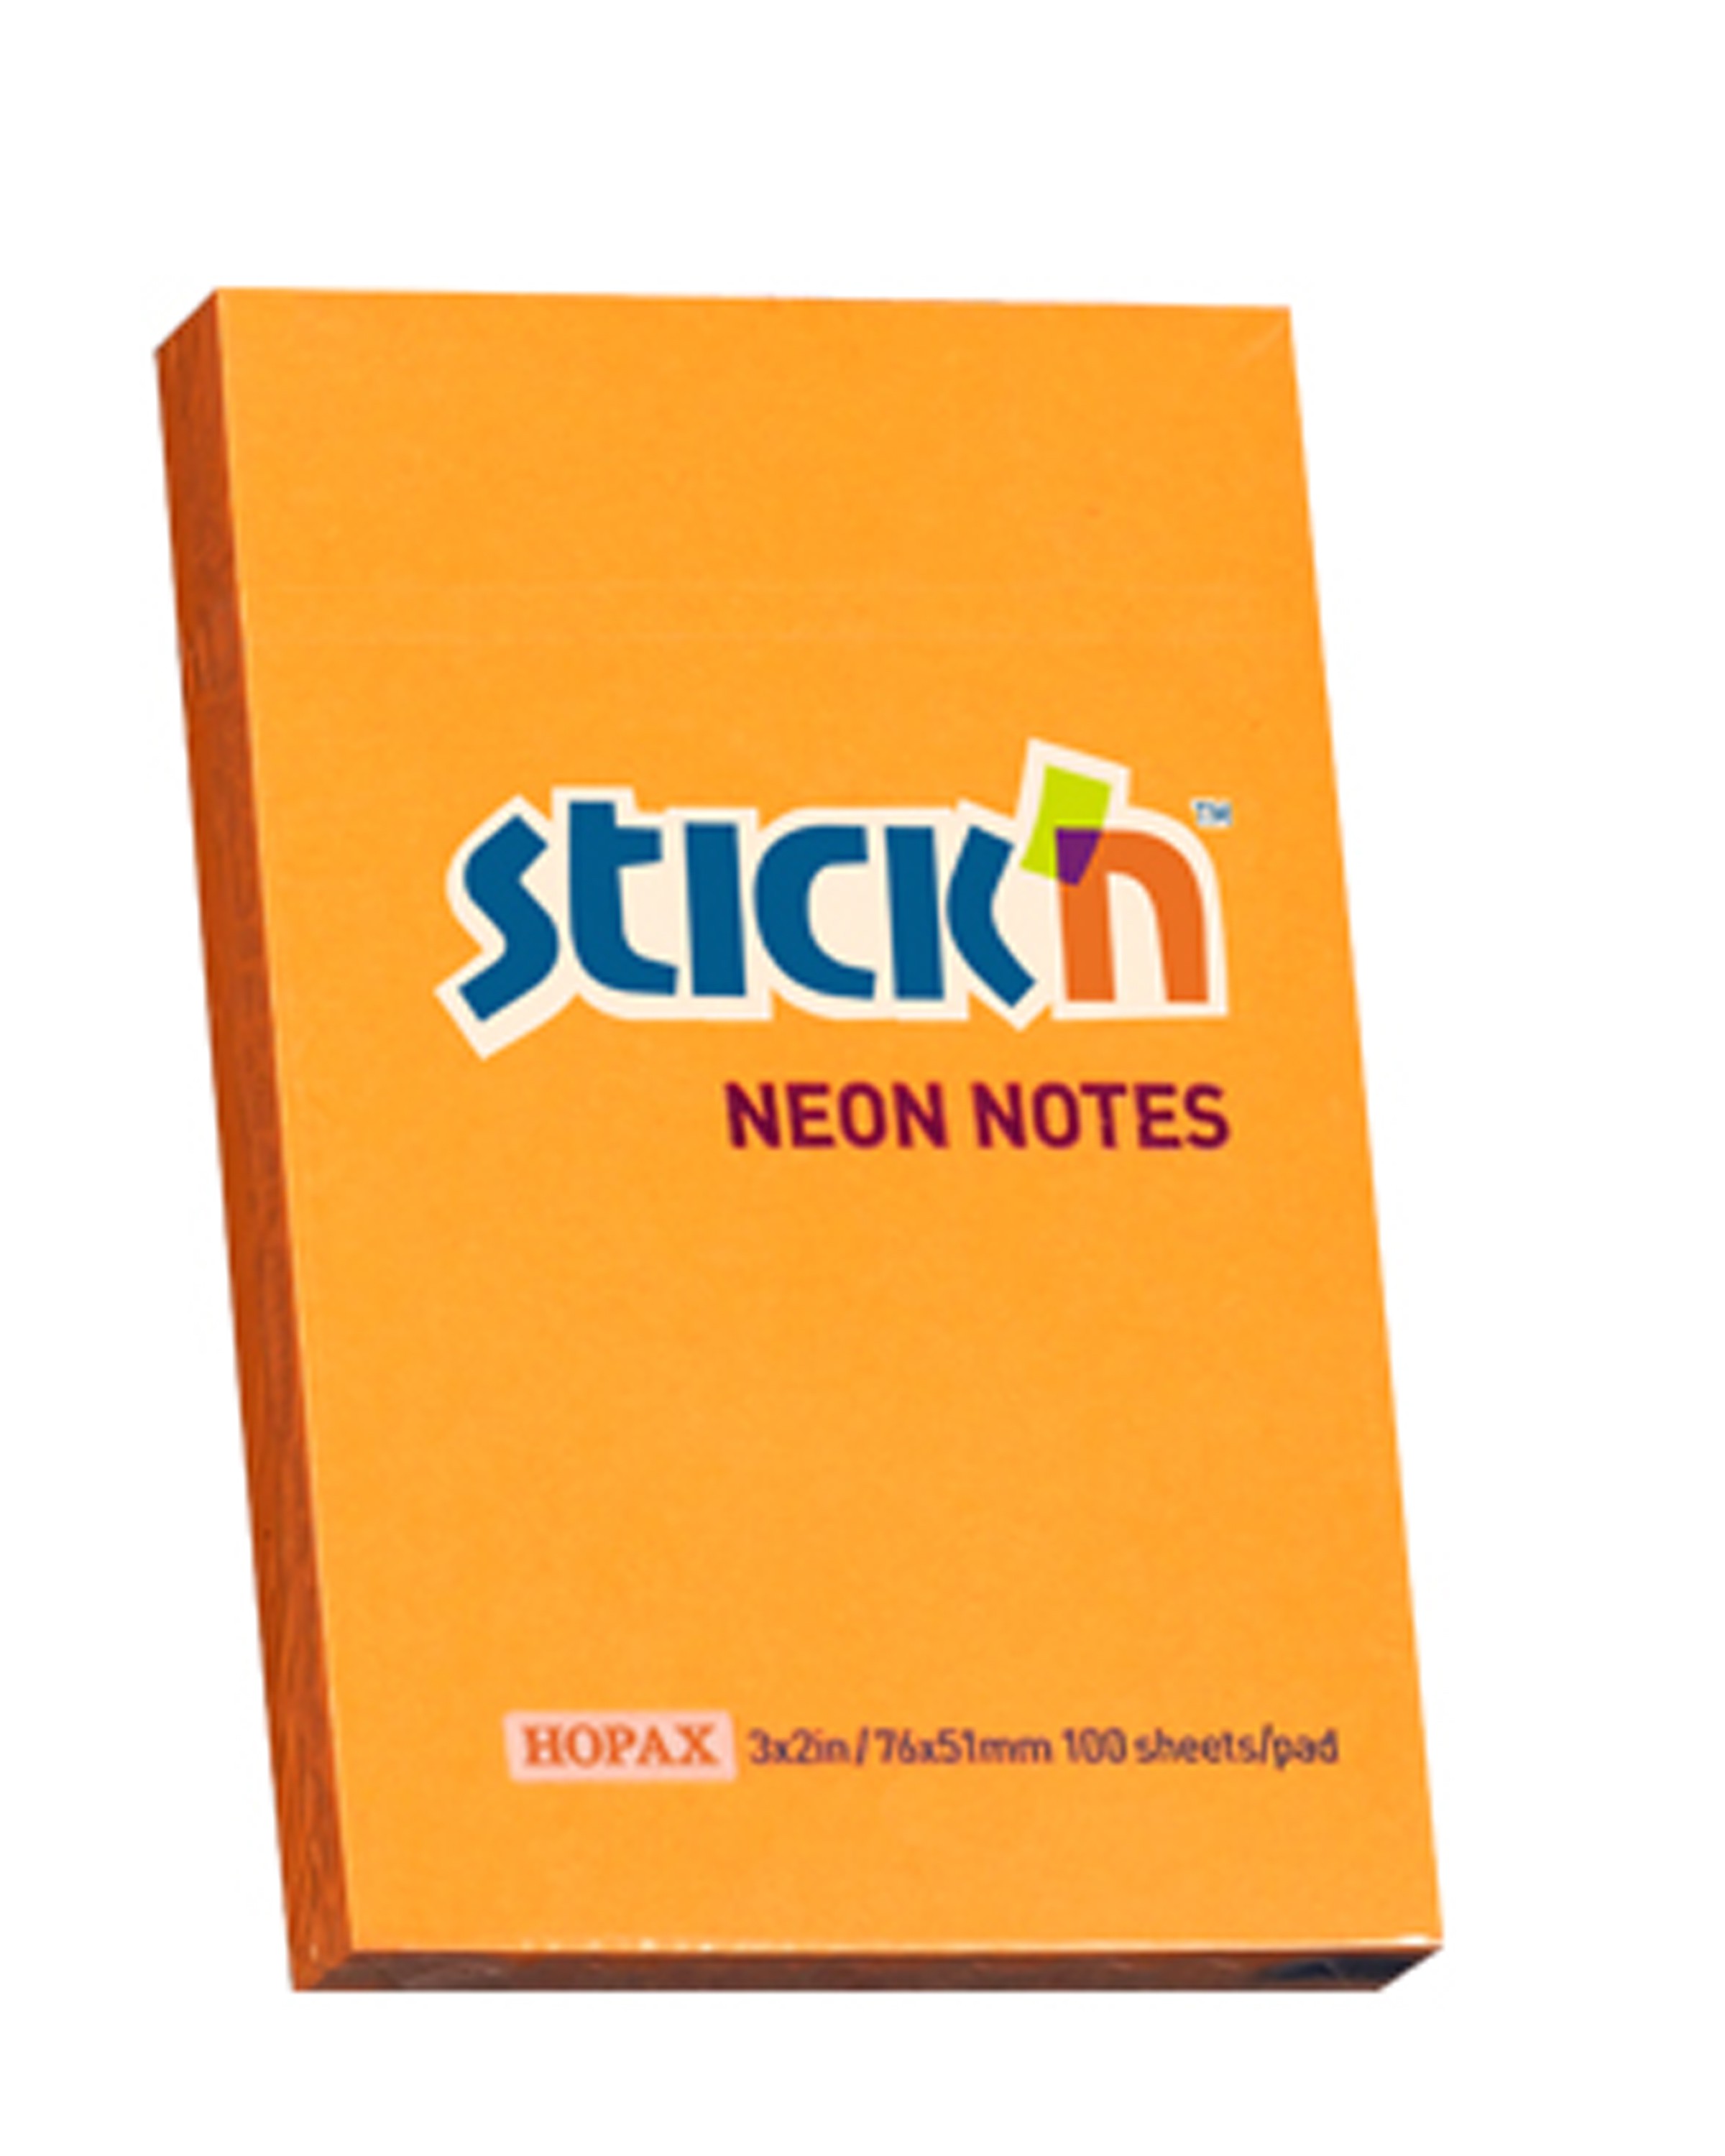 กระดาษโน๊ตกาวในตัว Stick'n 21160 สีส้ม 2x3 นิ้ว(1x100)